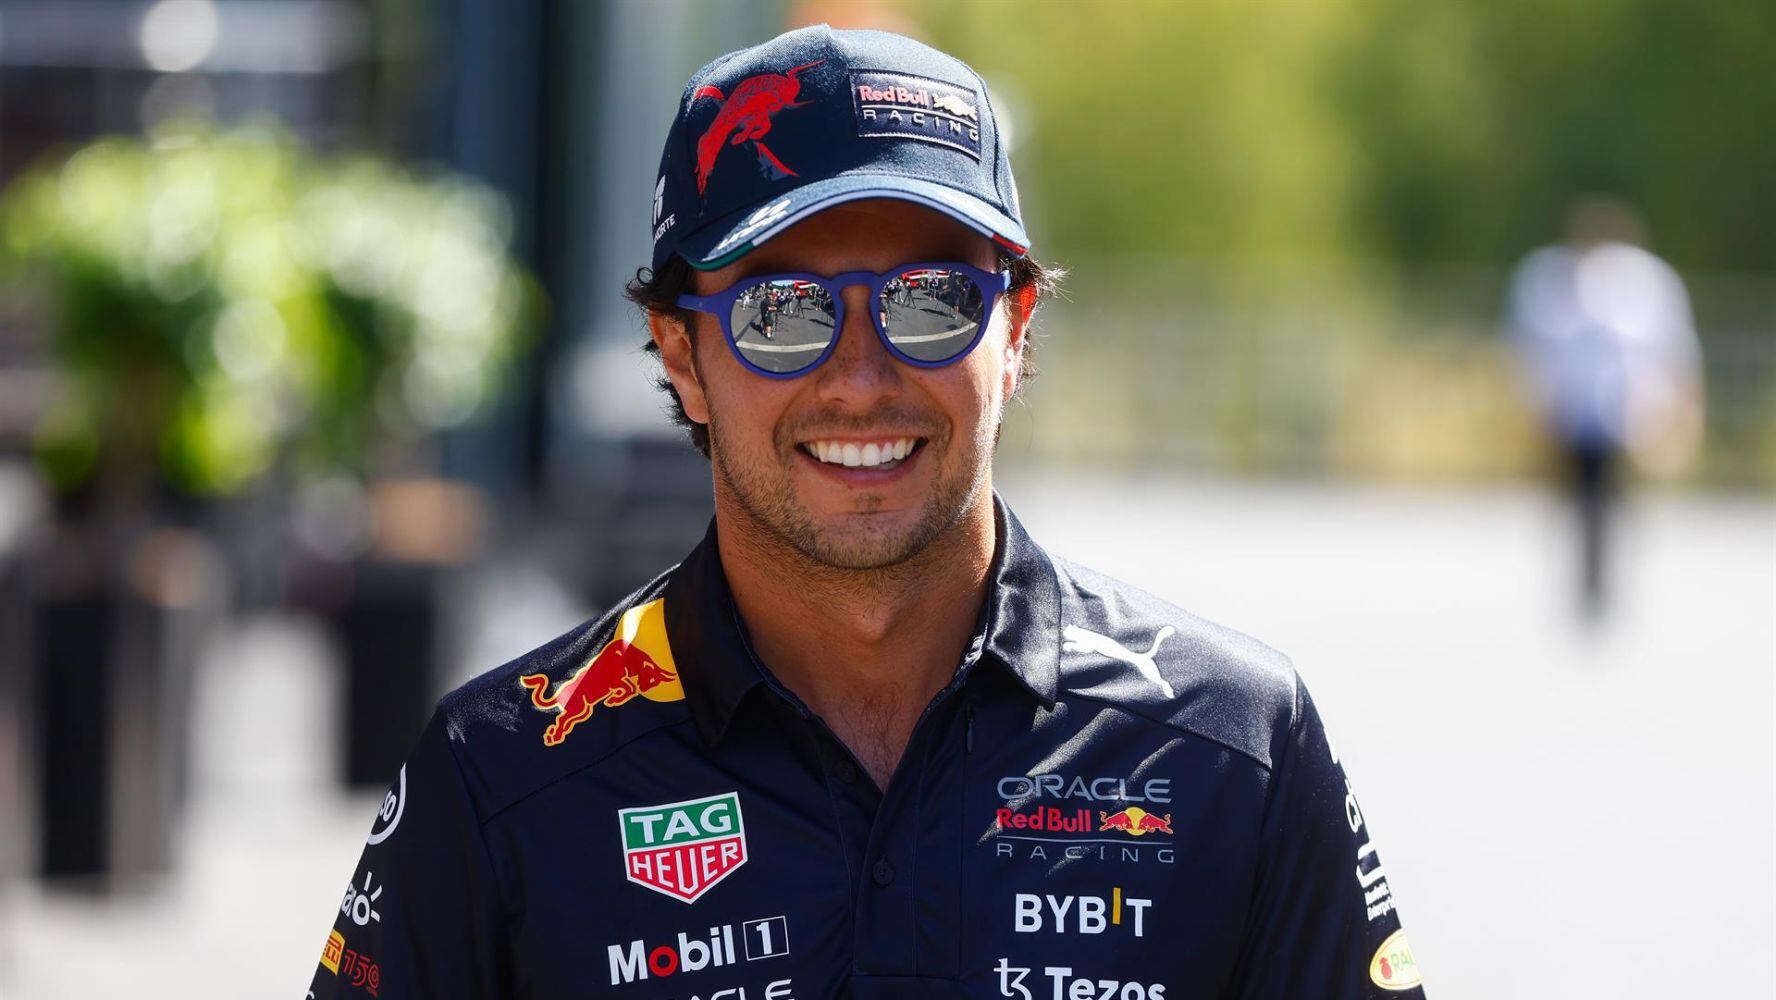 GP de Bélgica: ‘Checo’ Pérez asegura que un segundo lugar no es malo: ‘Será una buena carrera’